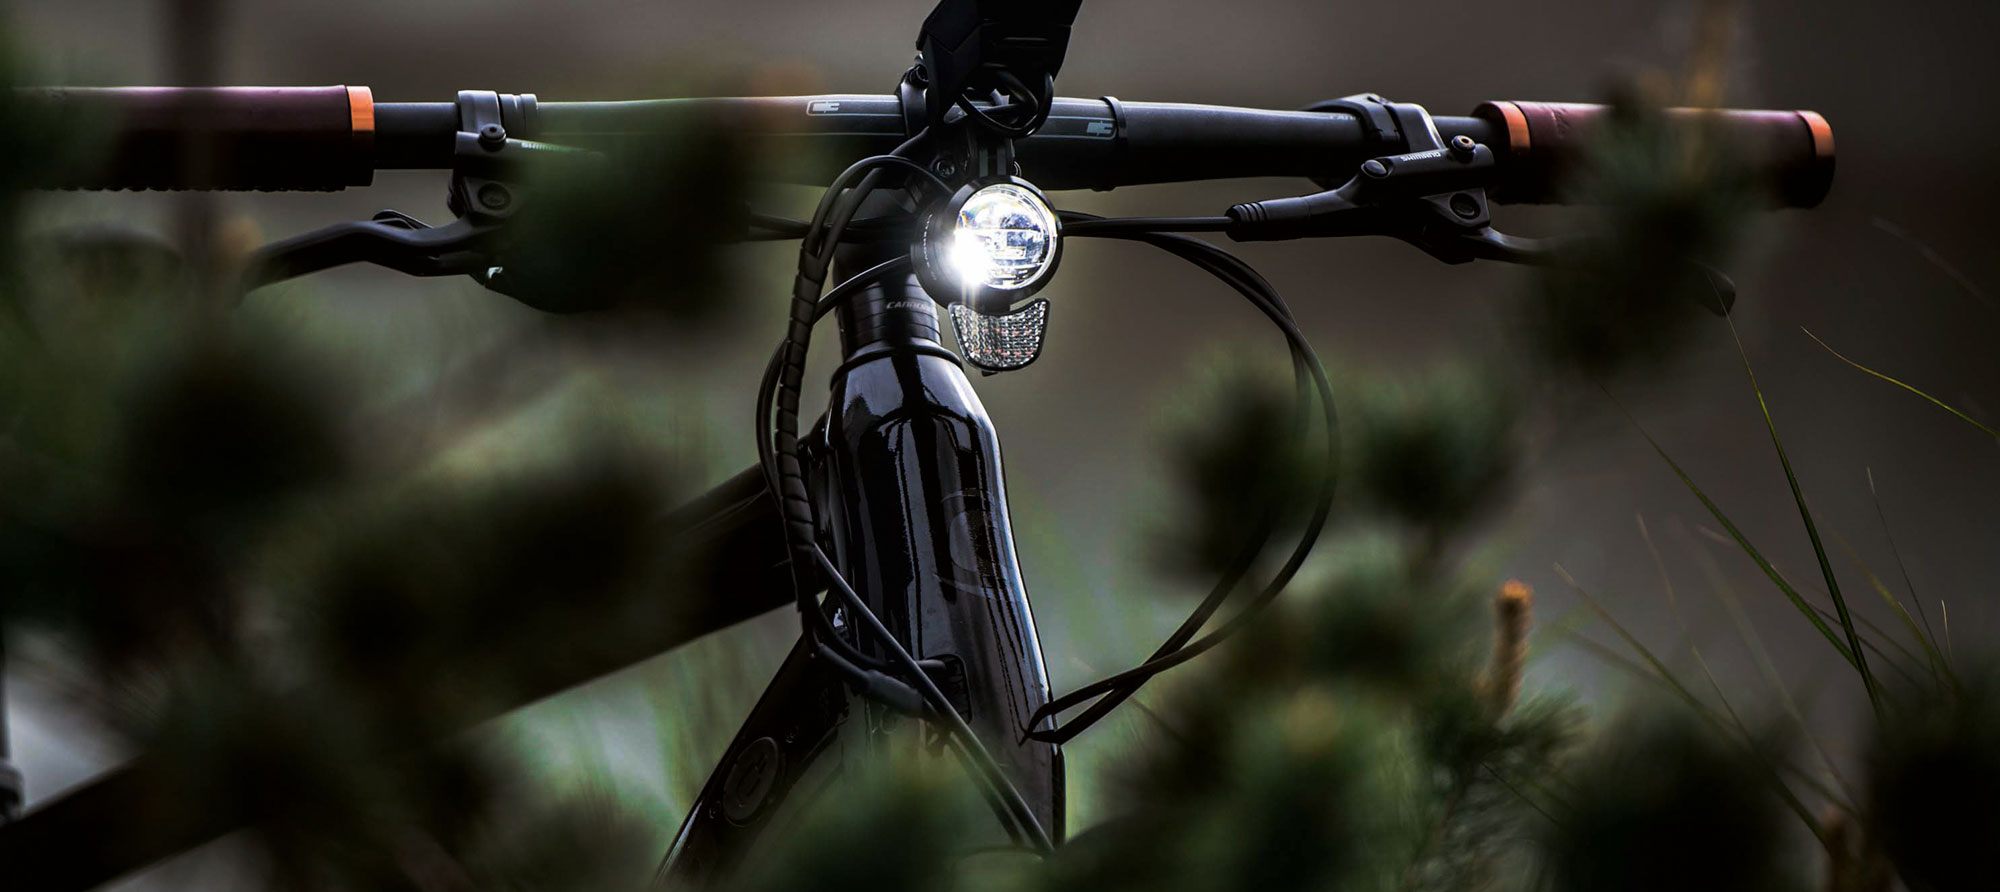 Litemove Bike Lights